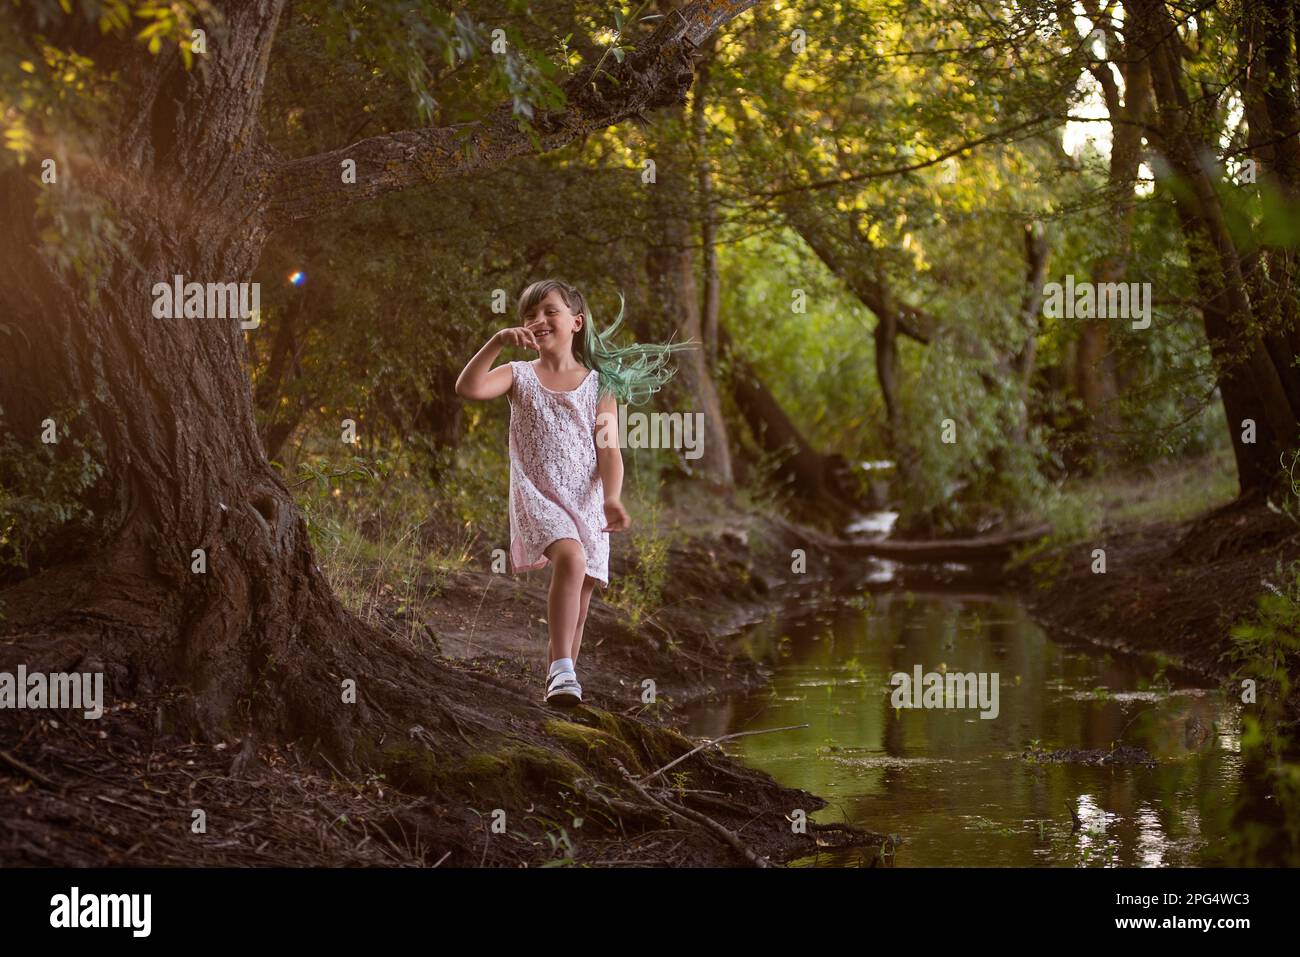 Teenager-Mädchen haben Spaß, machen in der Nähe des kleinen Flusses, des Flusses herum. Diversität, Kind der Z-Generation mit grünem Haar in der Nähe von Wasser im Wald. Konzept der Freiheit, Stockfoto